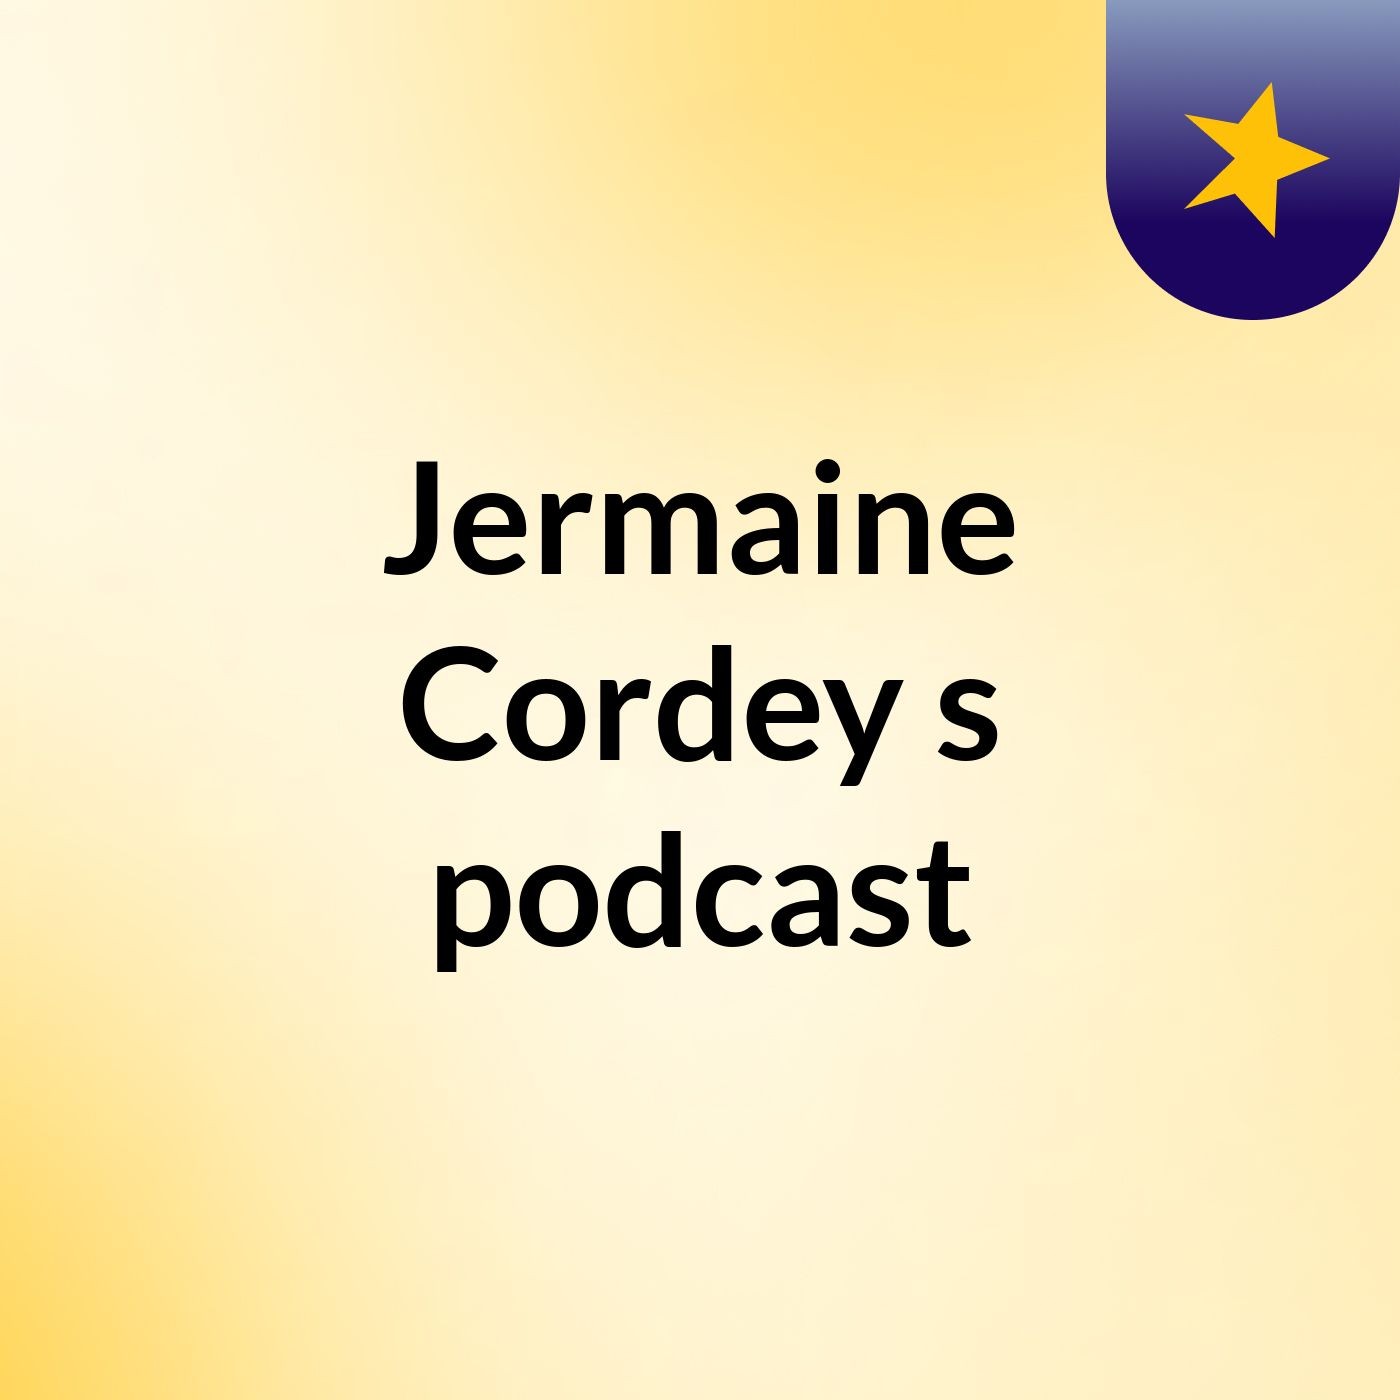 Jermaine Cordey's podcast